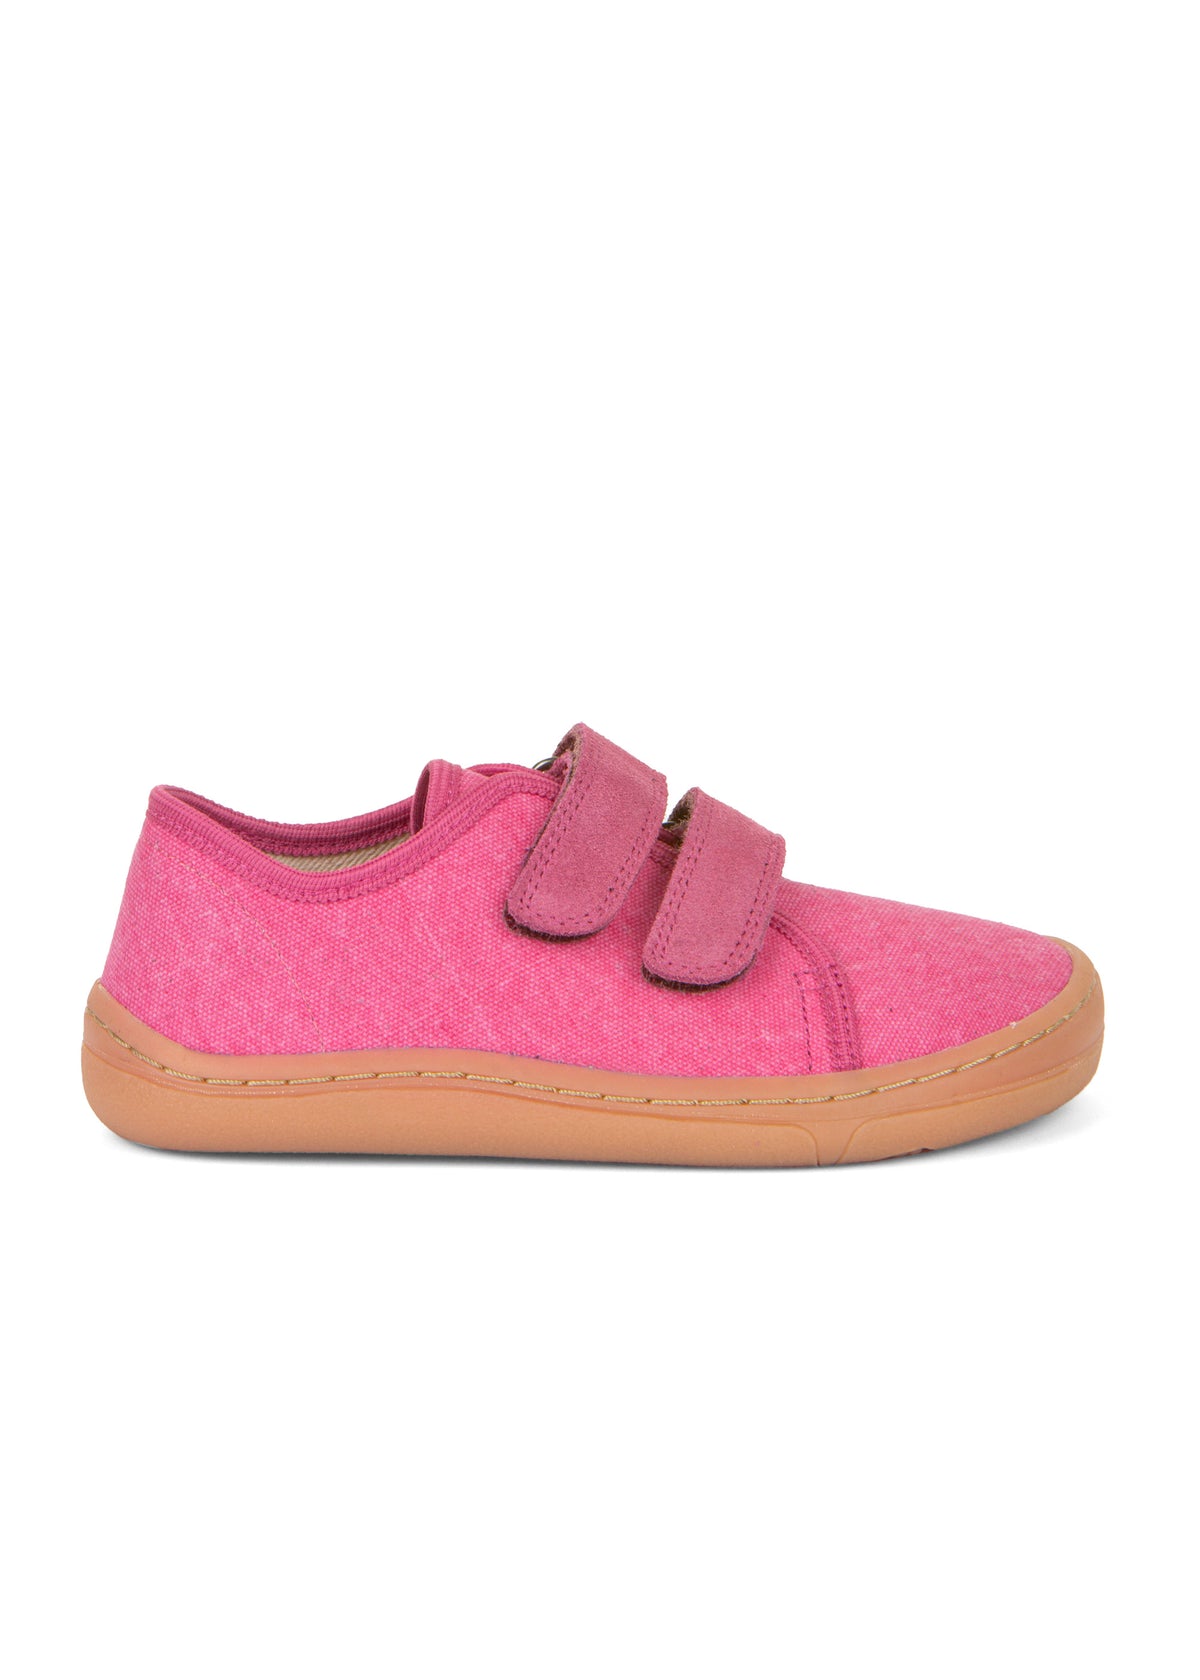 Children's barefoot sneakers - pink